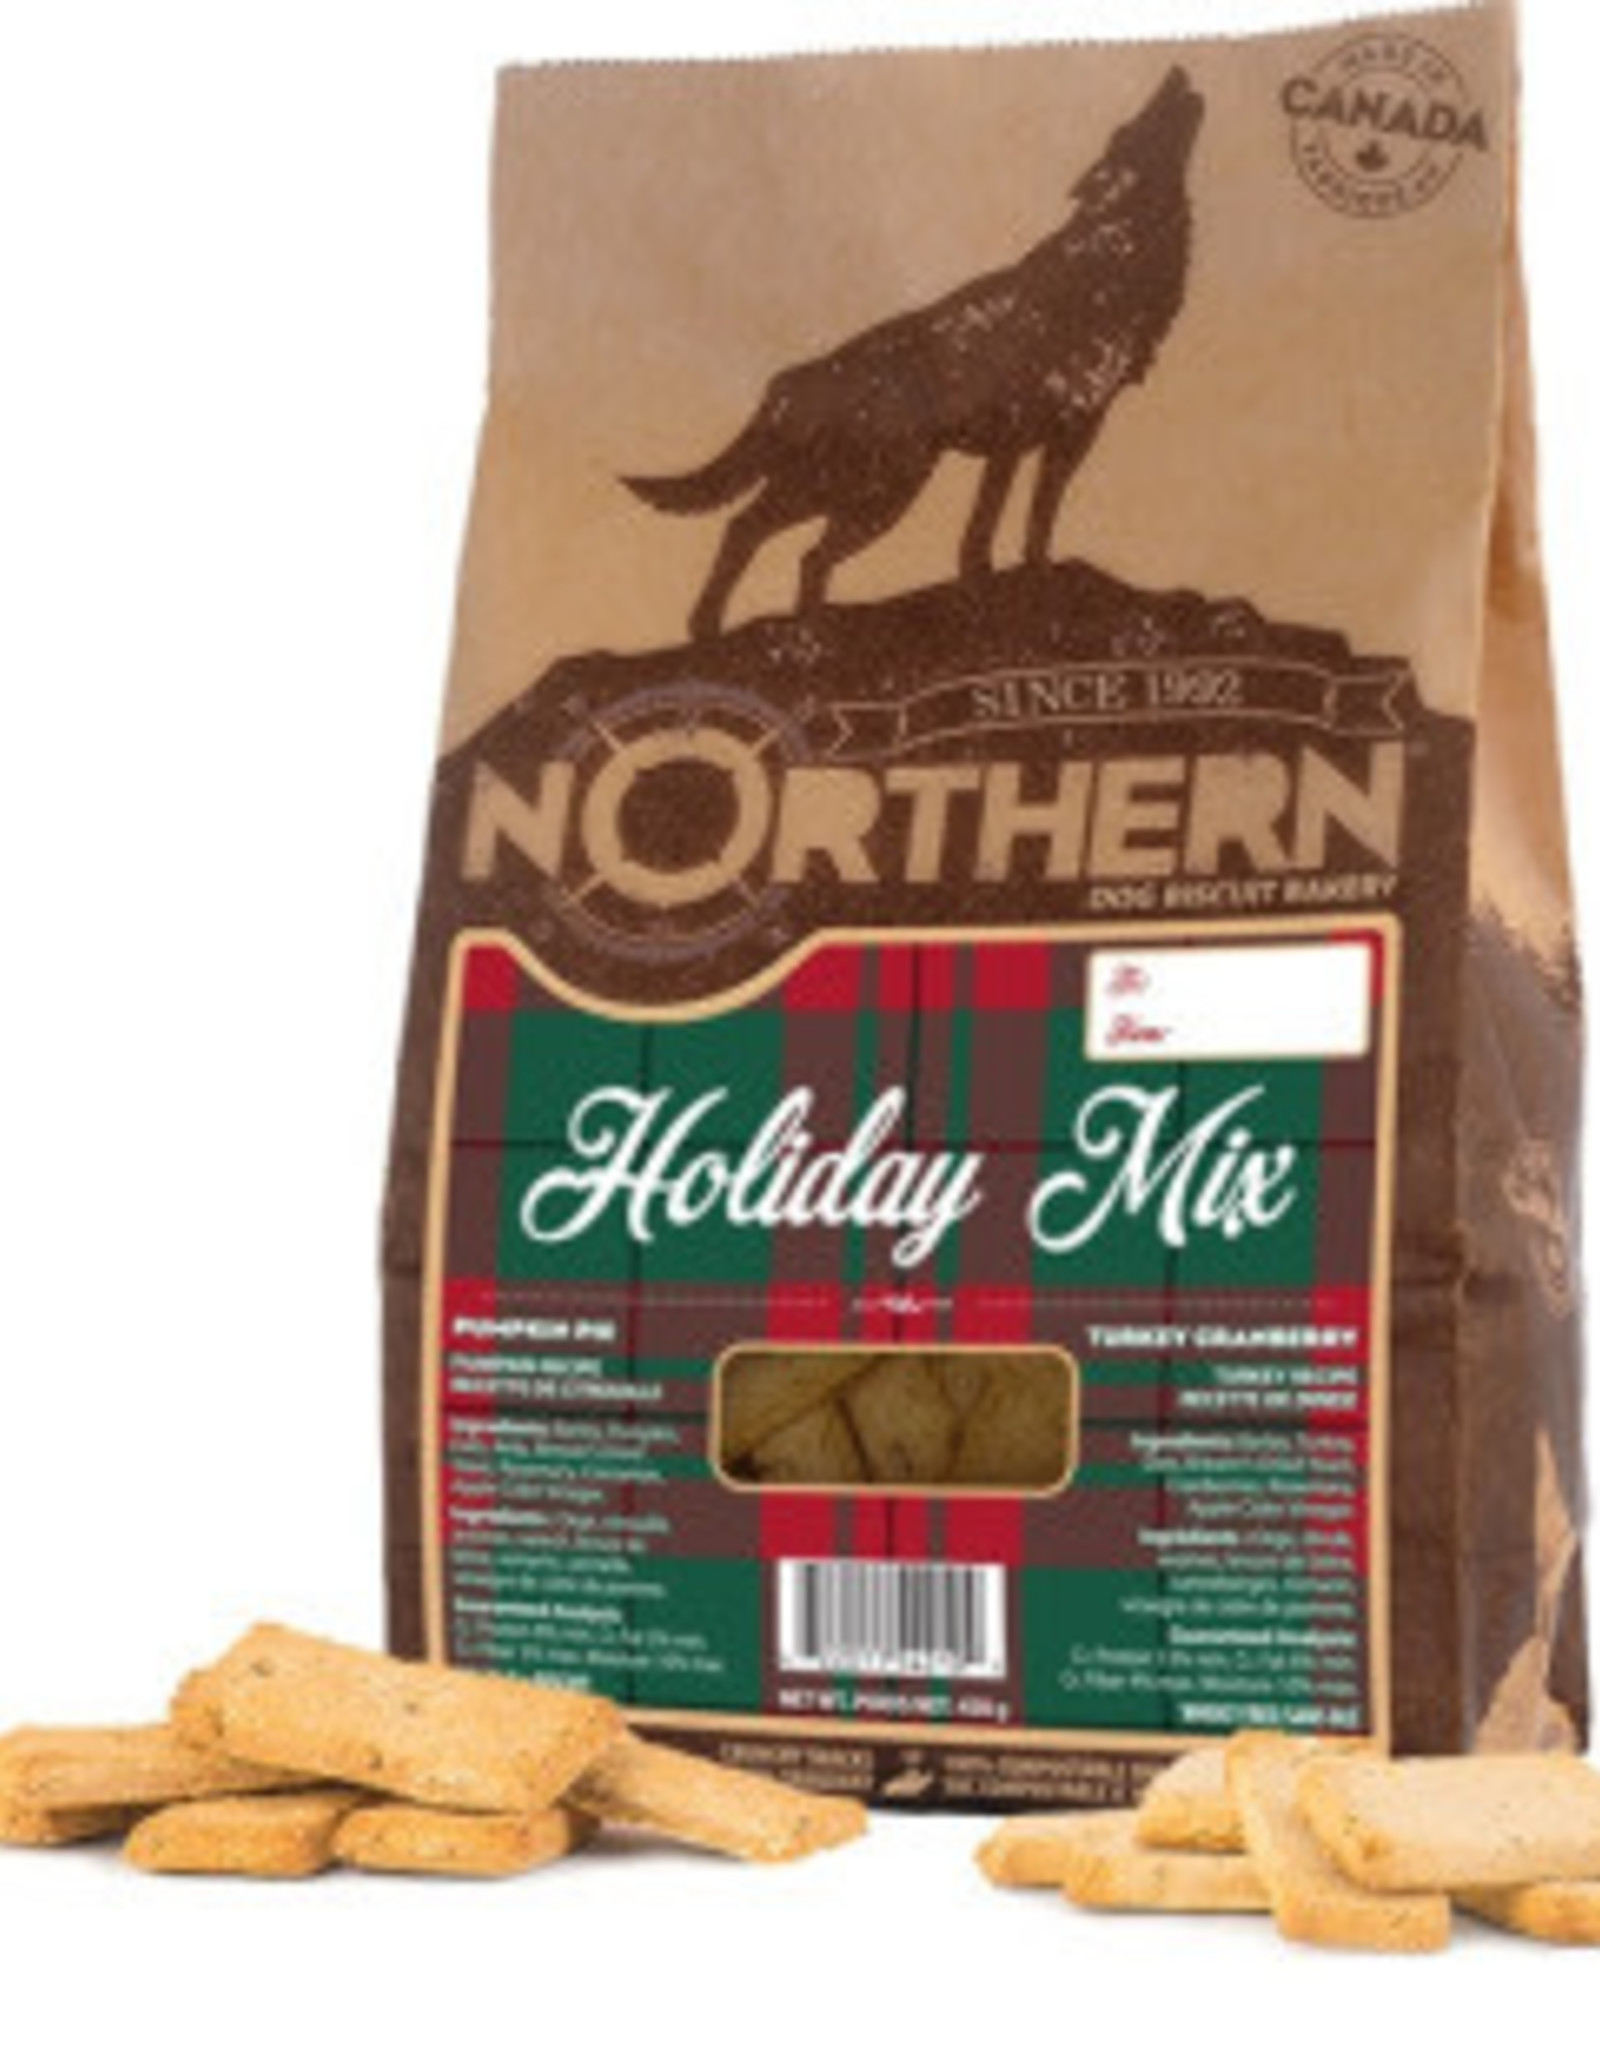 Northern Northern Dog Biscuits Holiday Mix Turkey Cranberry & Pumpkin Pie 500g